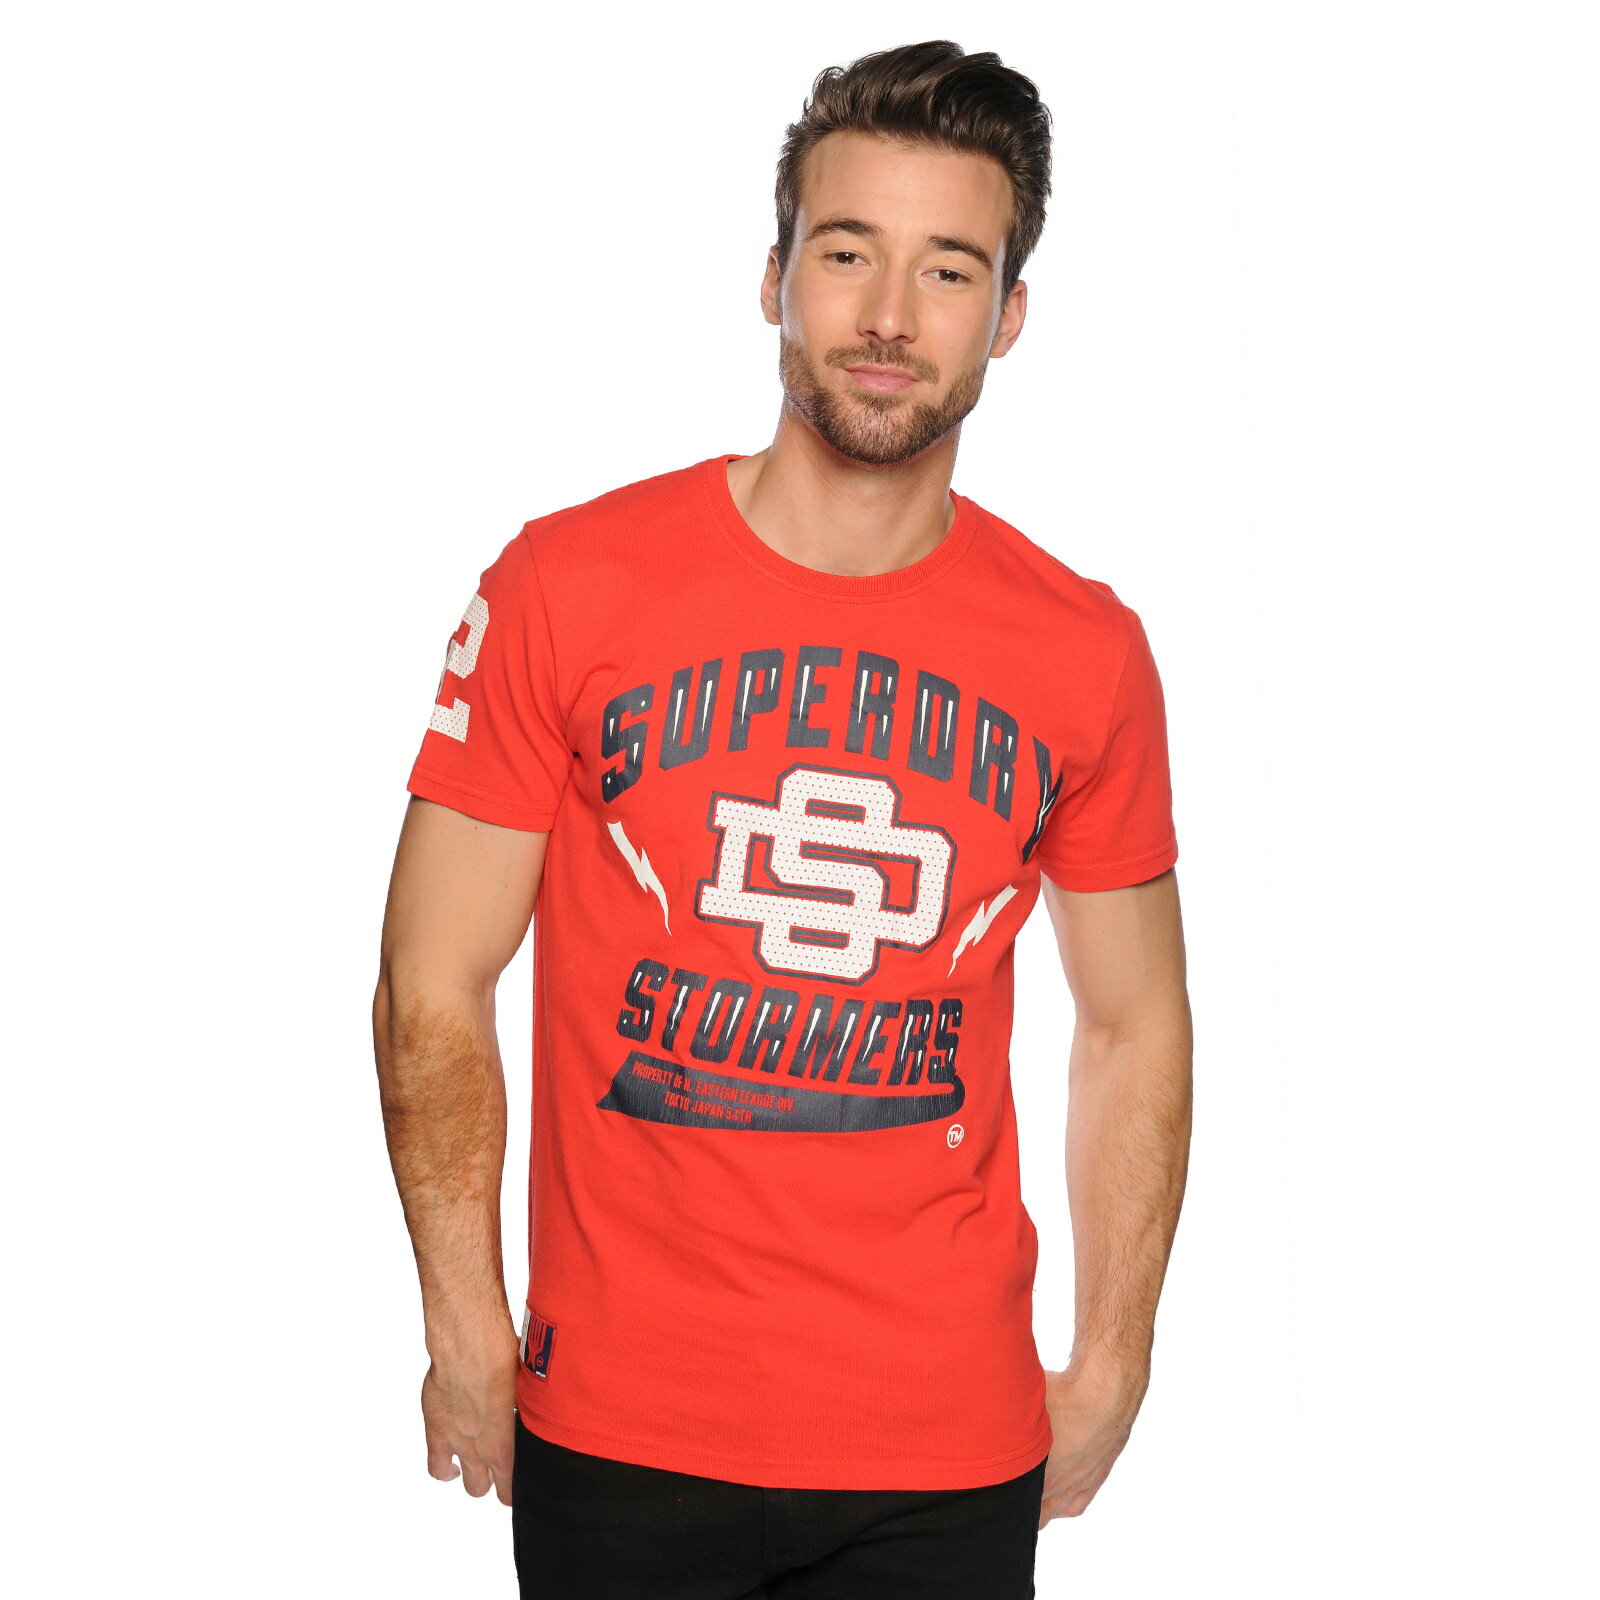 美國百分百【Superdry】極度乾燥 T恤 T-shirt 短袖 短T 風暴人隊 Stormers 紅 S號 F359